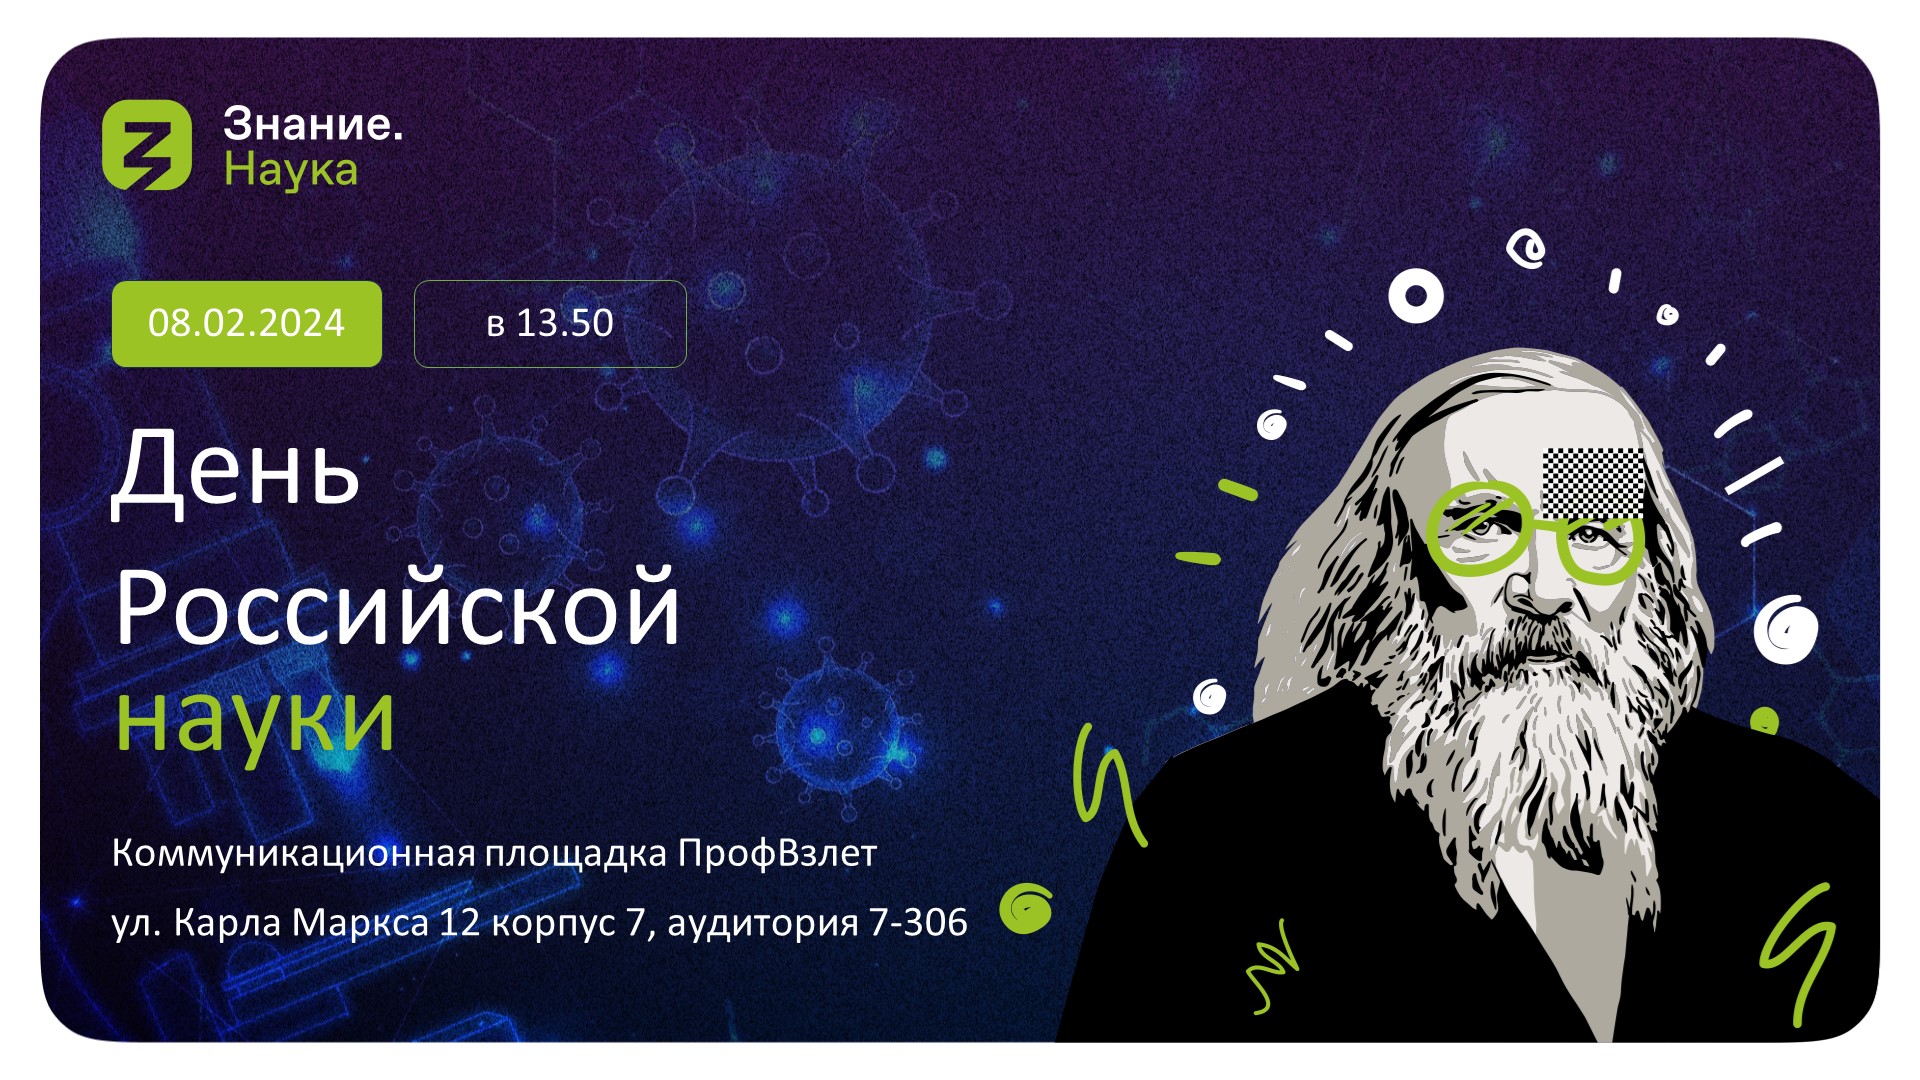 Серия научно-популярных мероприятий в рамках Дня российской науки